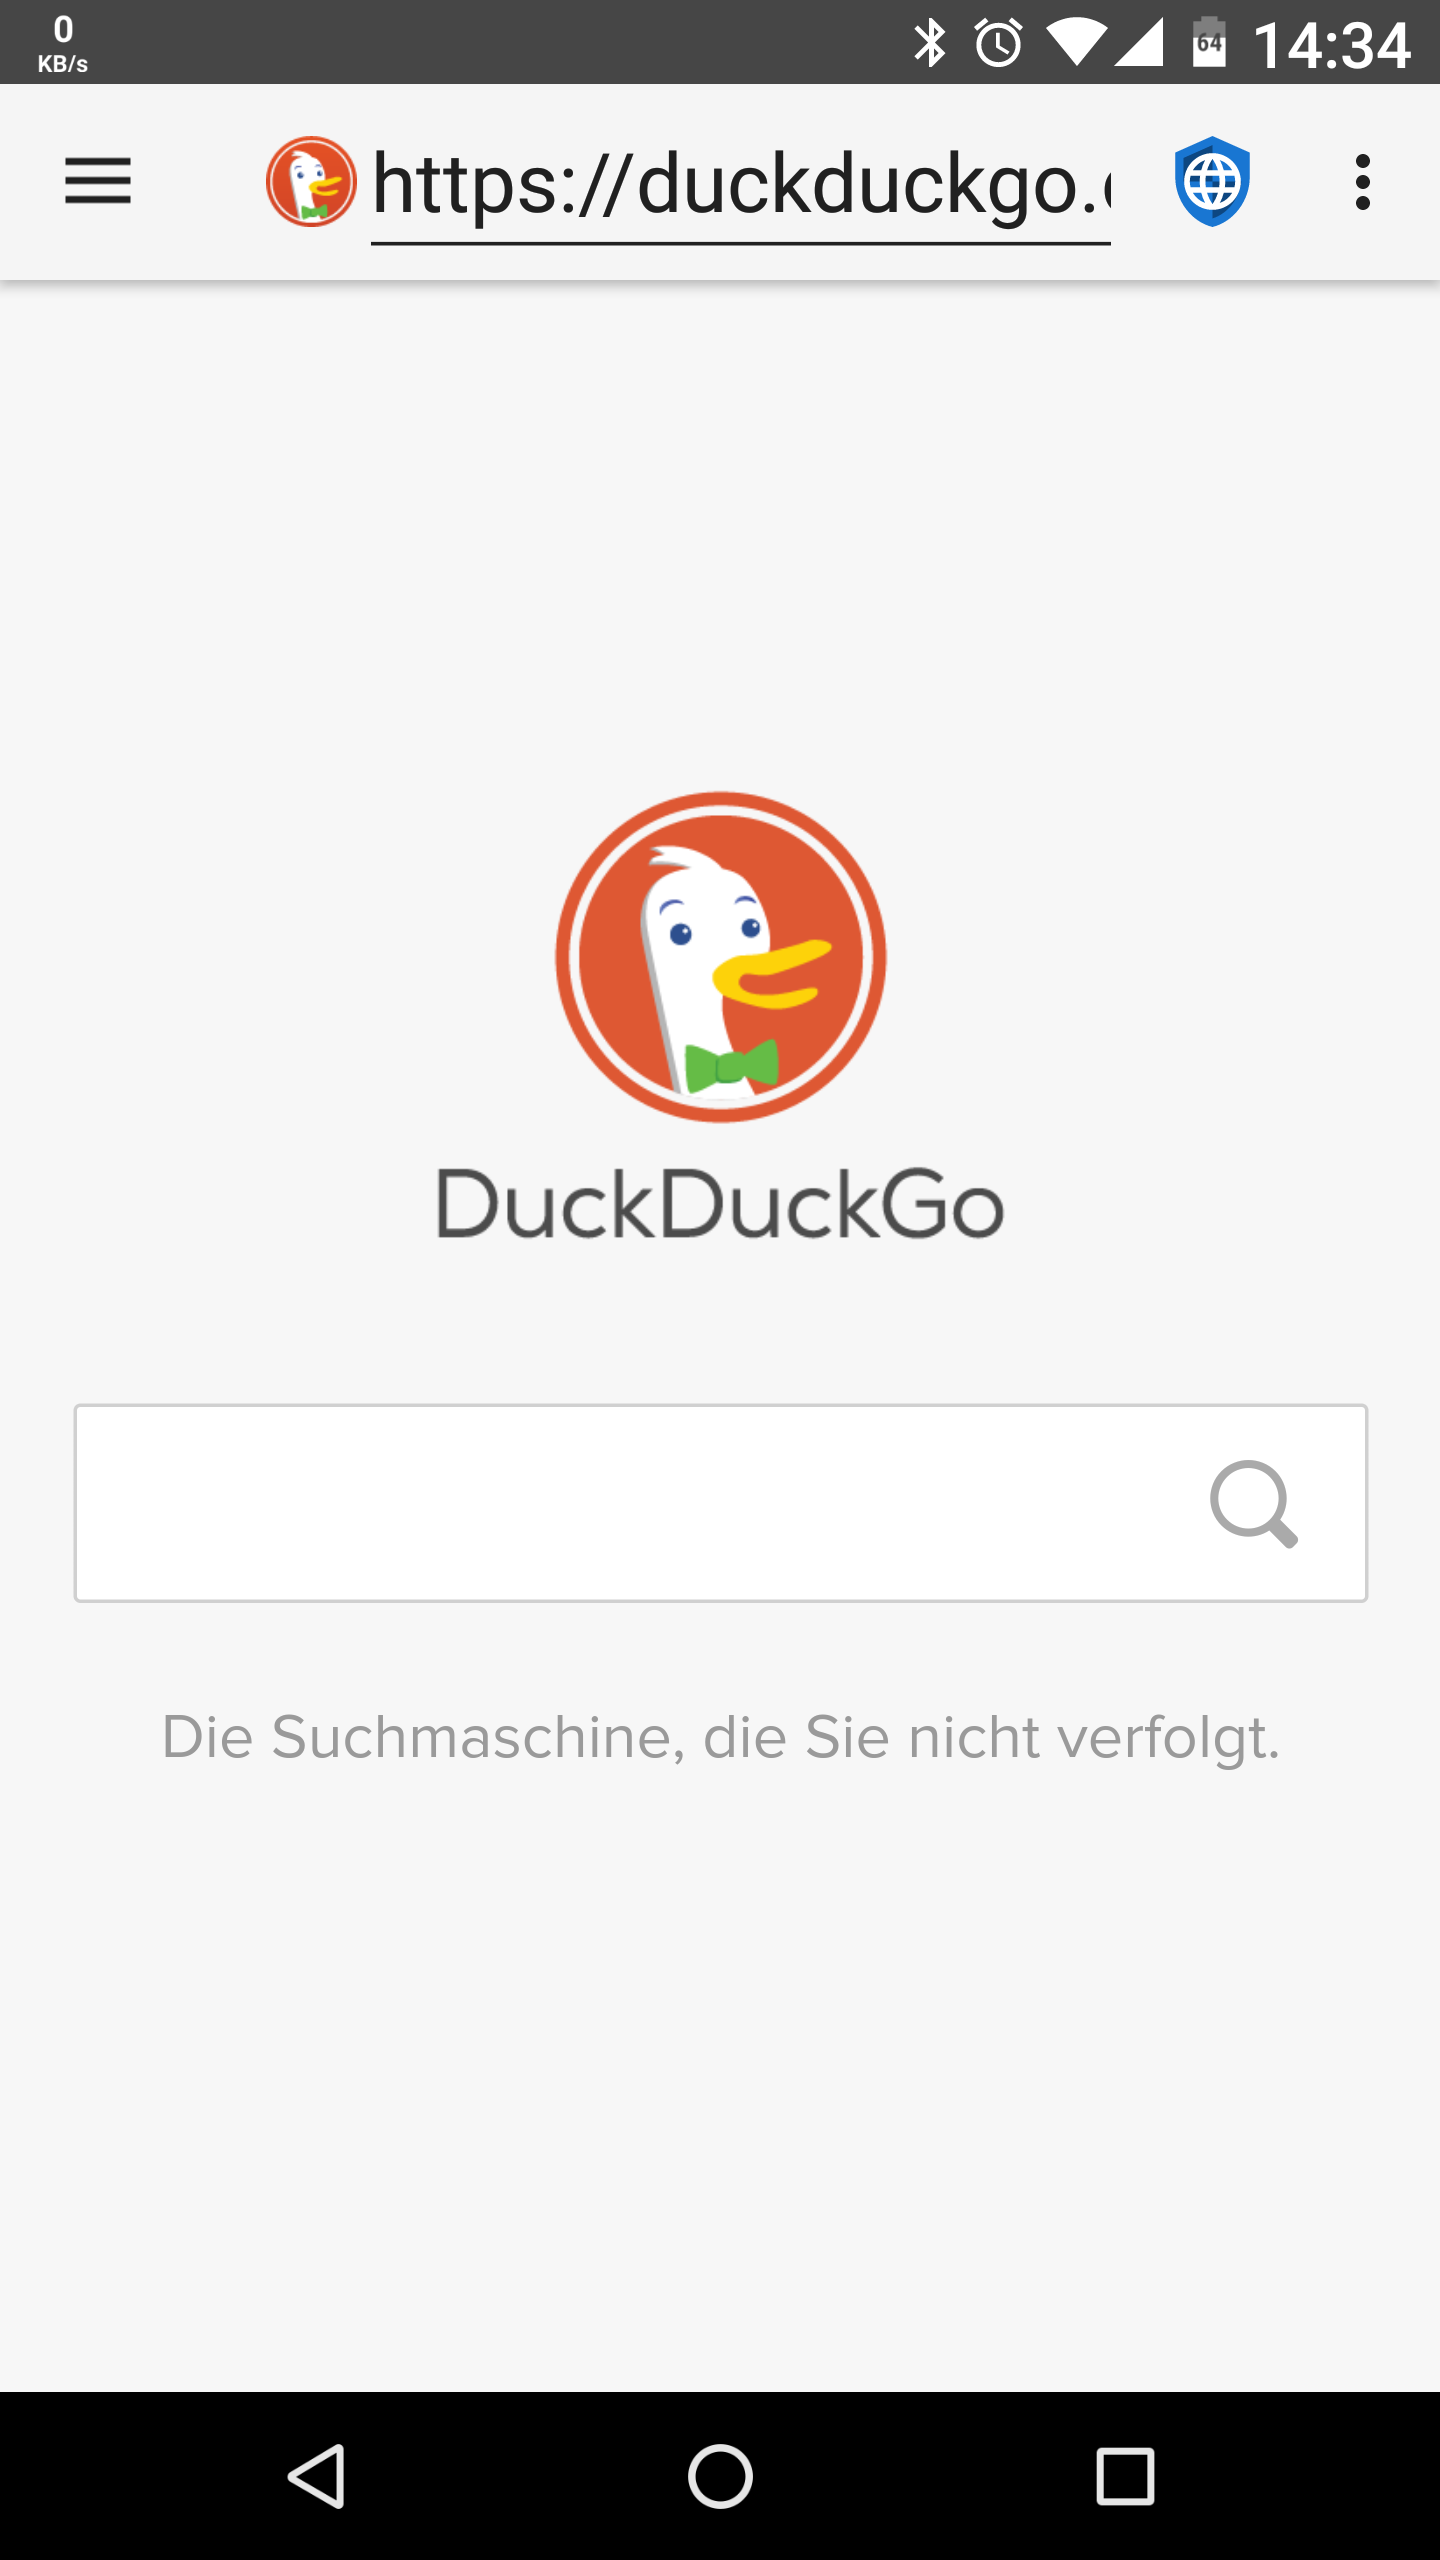 01 - DuckDuckGo - de.png